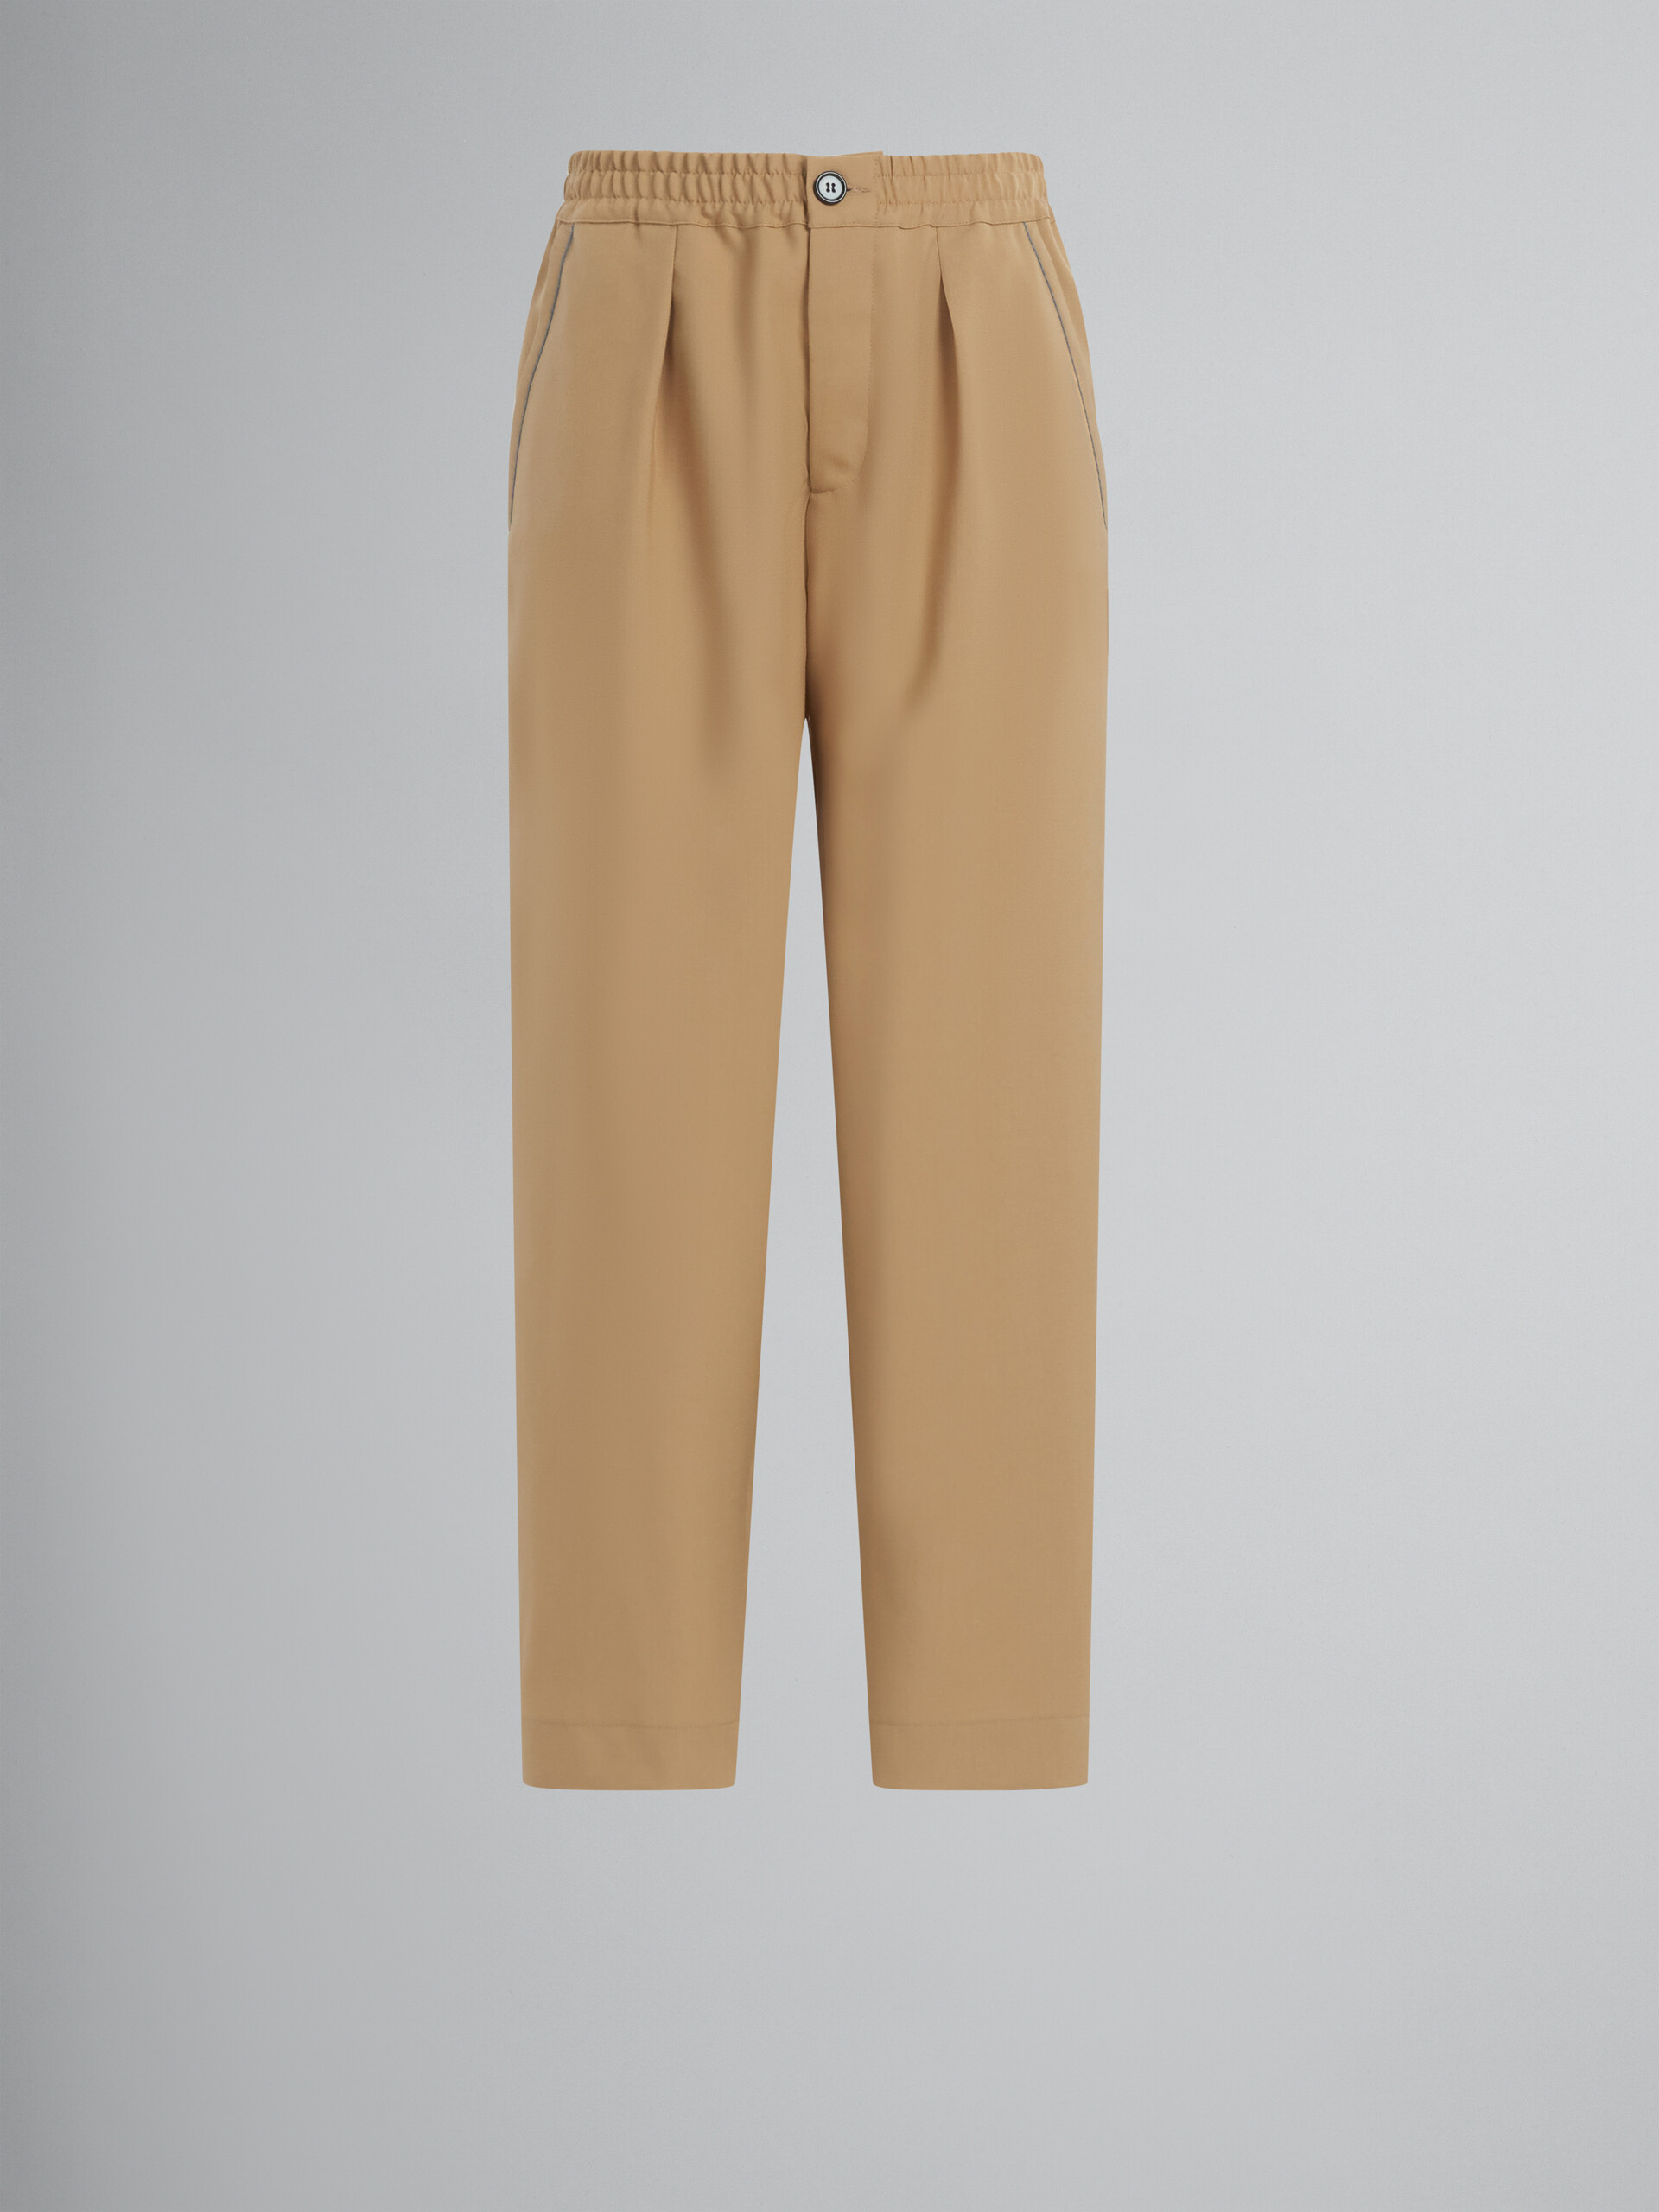 Kurz geschnittene Hose aus beigefarbener Tropenwolle - Hosen - Image 1